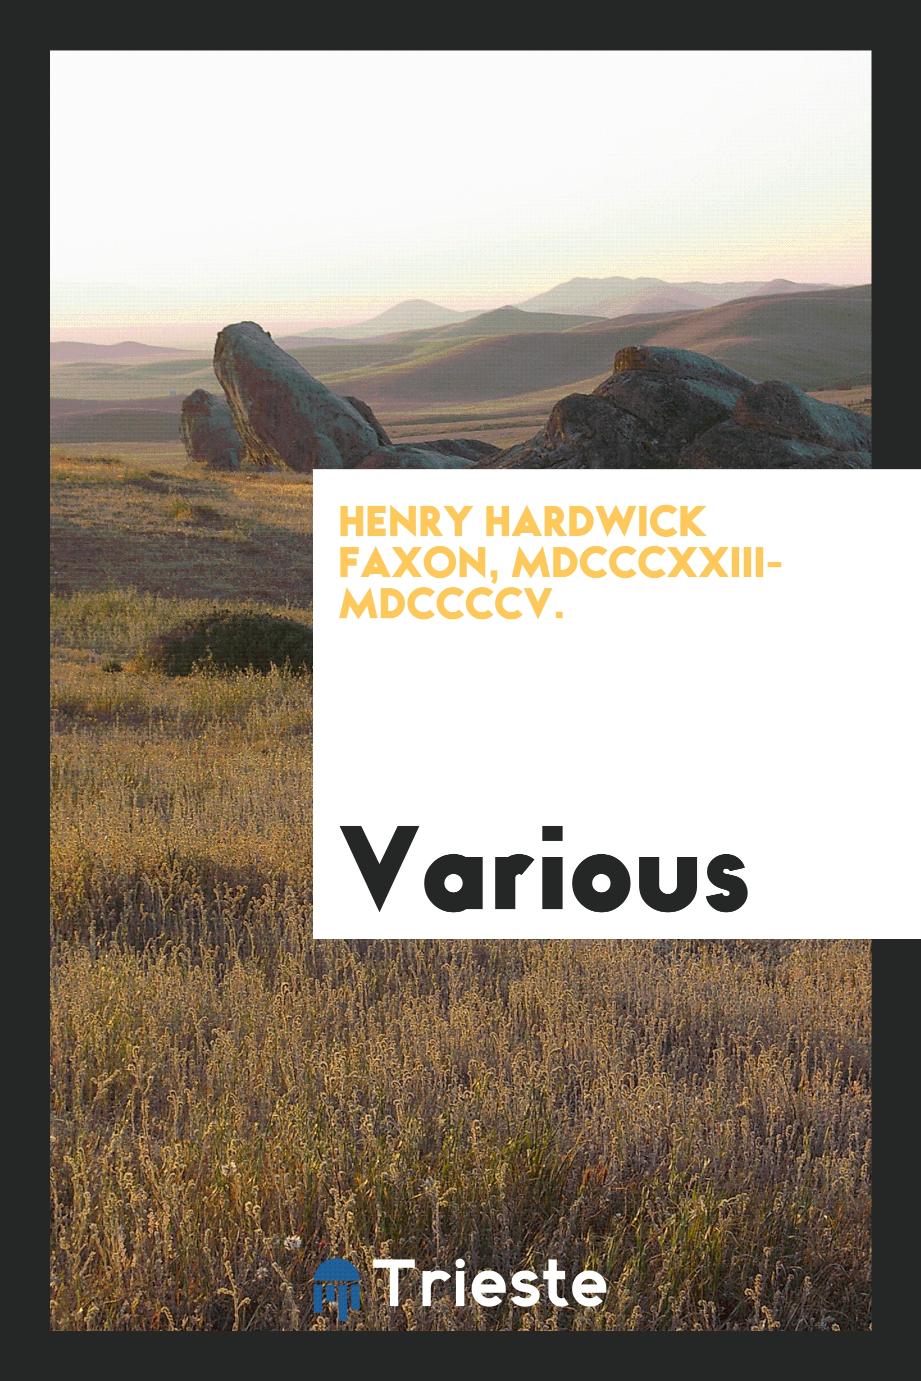 Henry Hardwick Faxon, MDCCCXXIII-MDCCCCV.